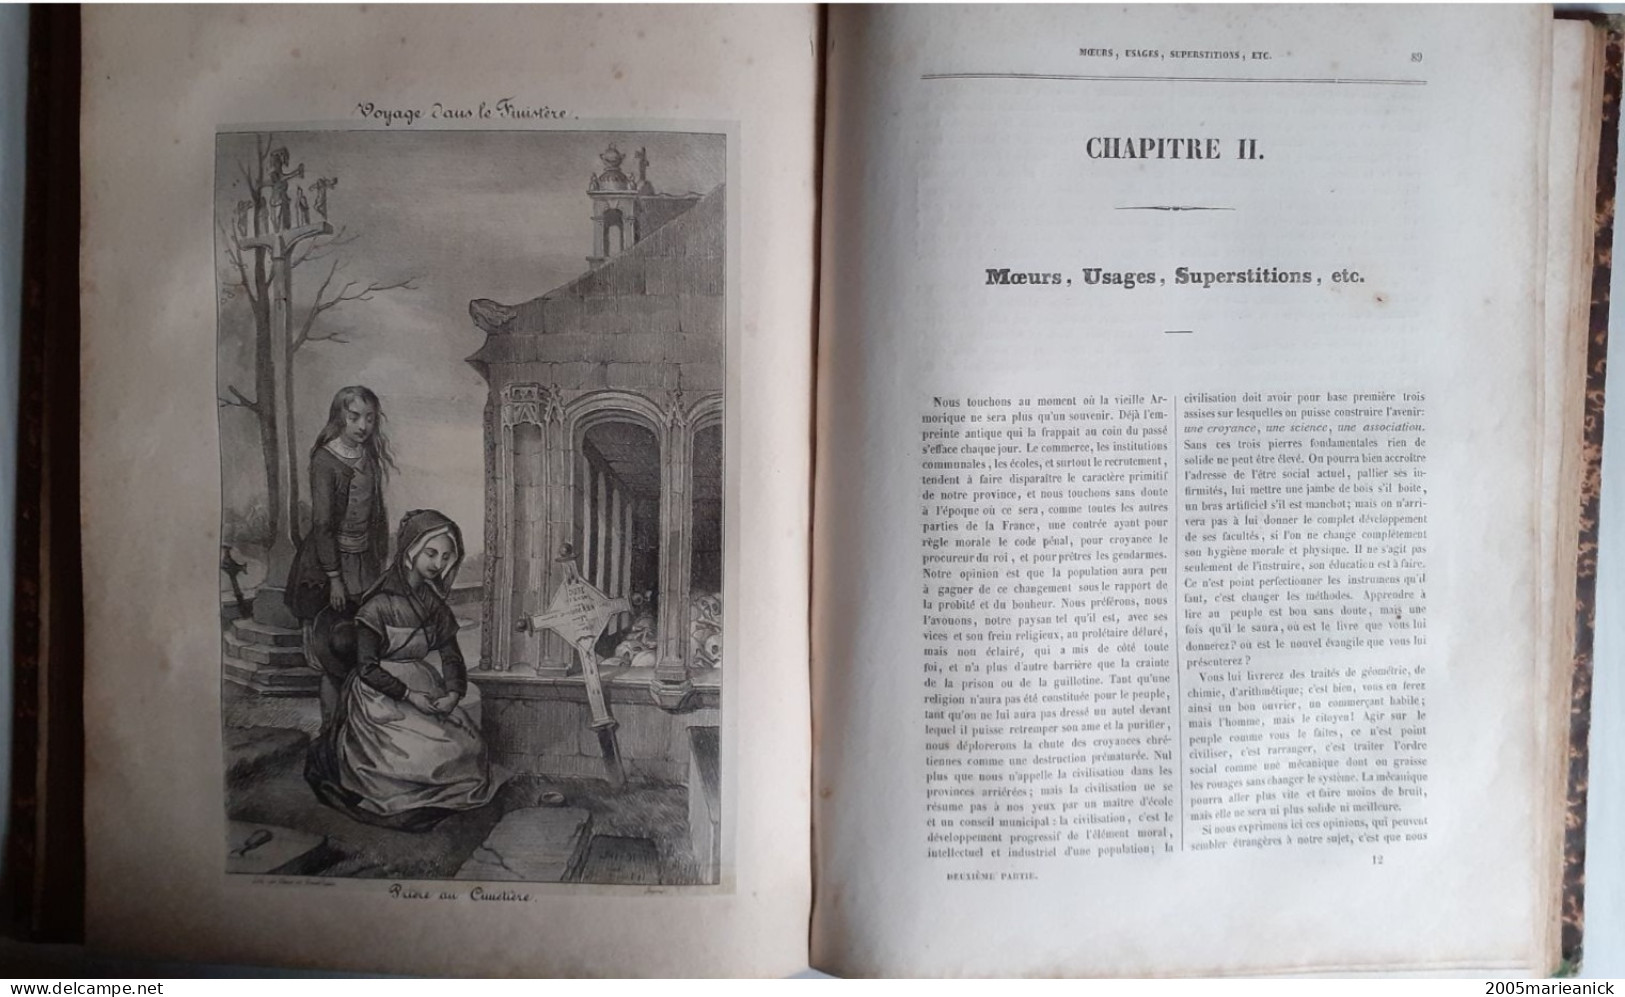 BRETAGNE: 1er volume VOYAGE DANS LE FINISTERE en 1794-1795, second volume VOYAGE DANS LE FINISTERE en 1836